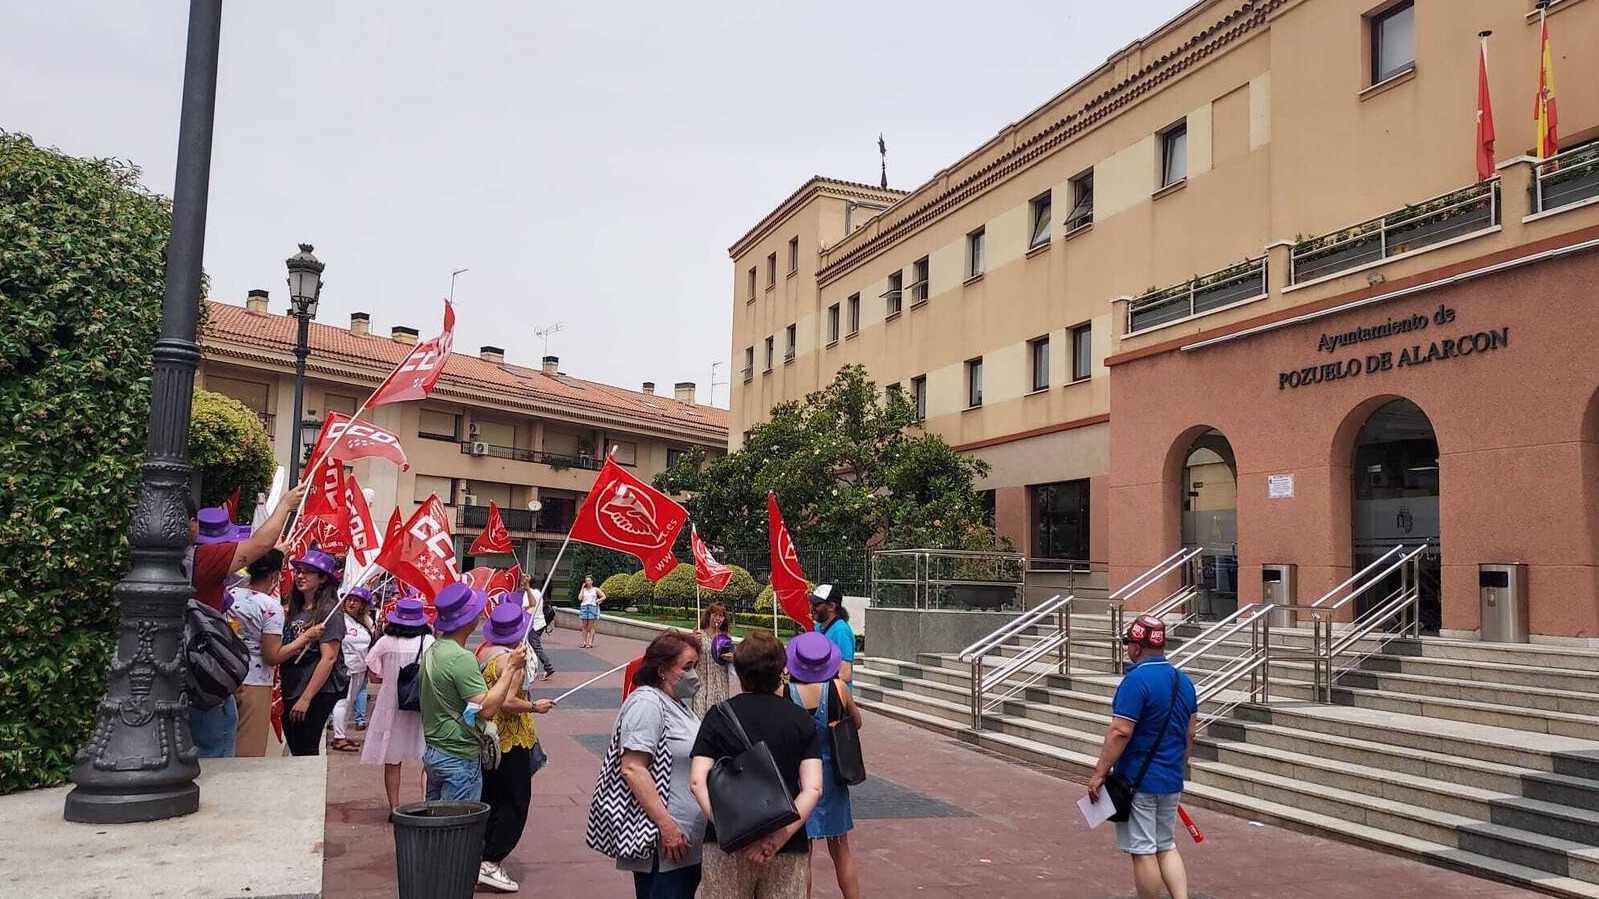 UGT convoca a los trabajadores de limpieza el próximo 19 de octubre a una protesta frente al ayuntamiento de Pozuelo